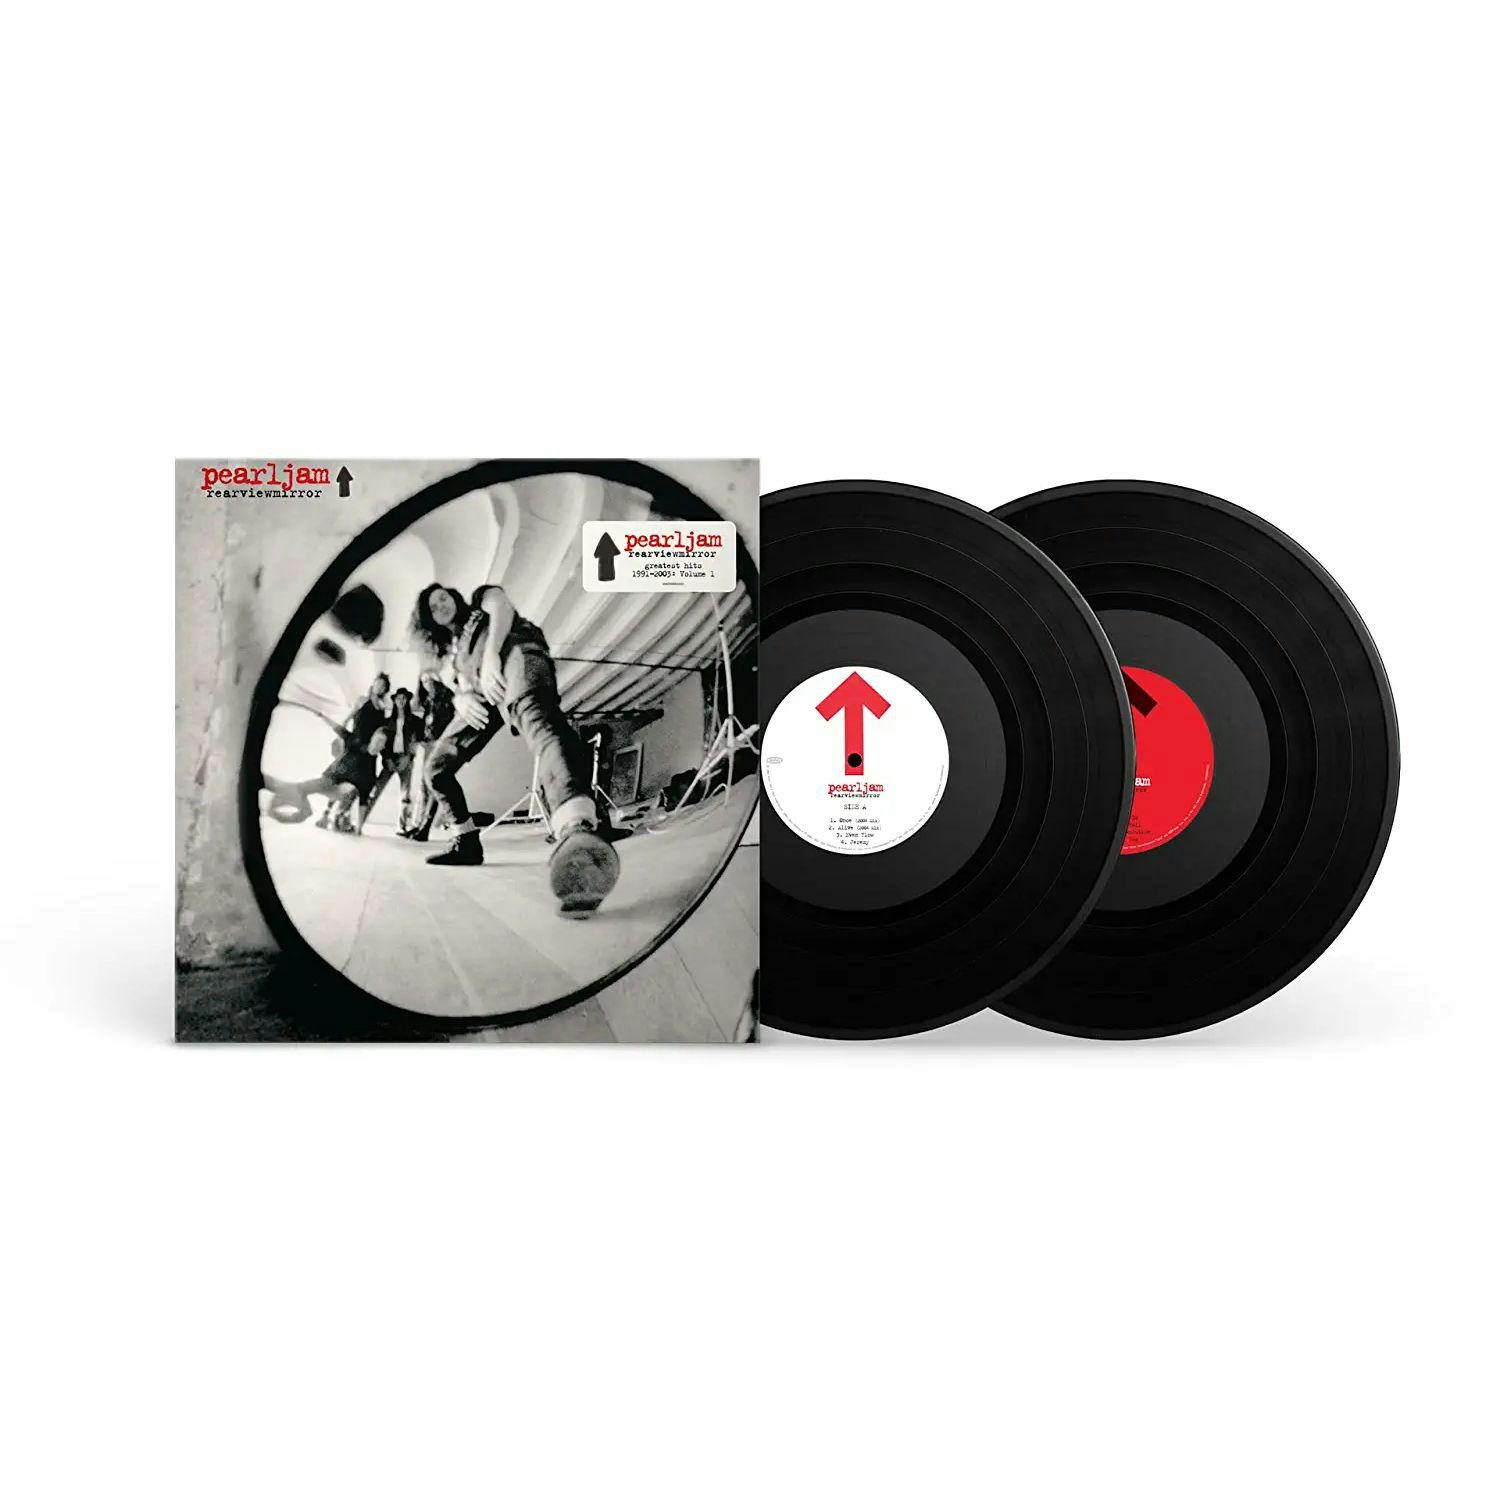 Pearl Jam Rearviewmirror (Greatest Hits 1991-2003: Volume 1) 2LP (Vinyl)